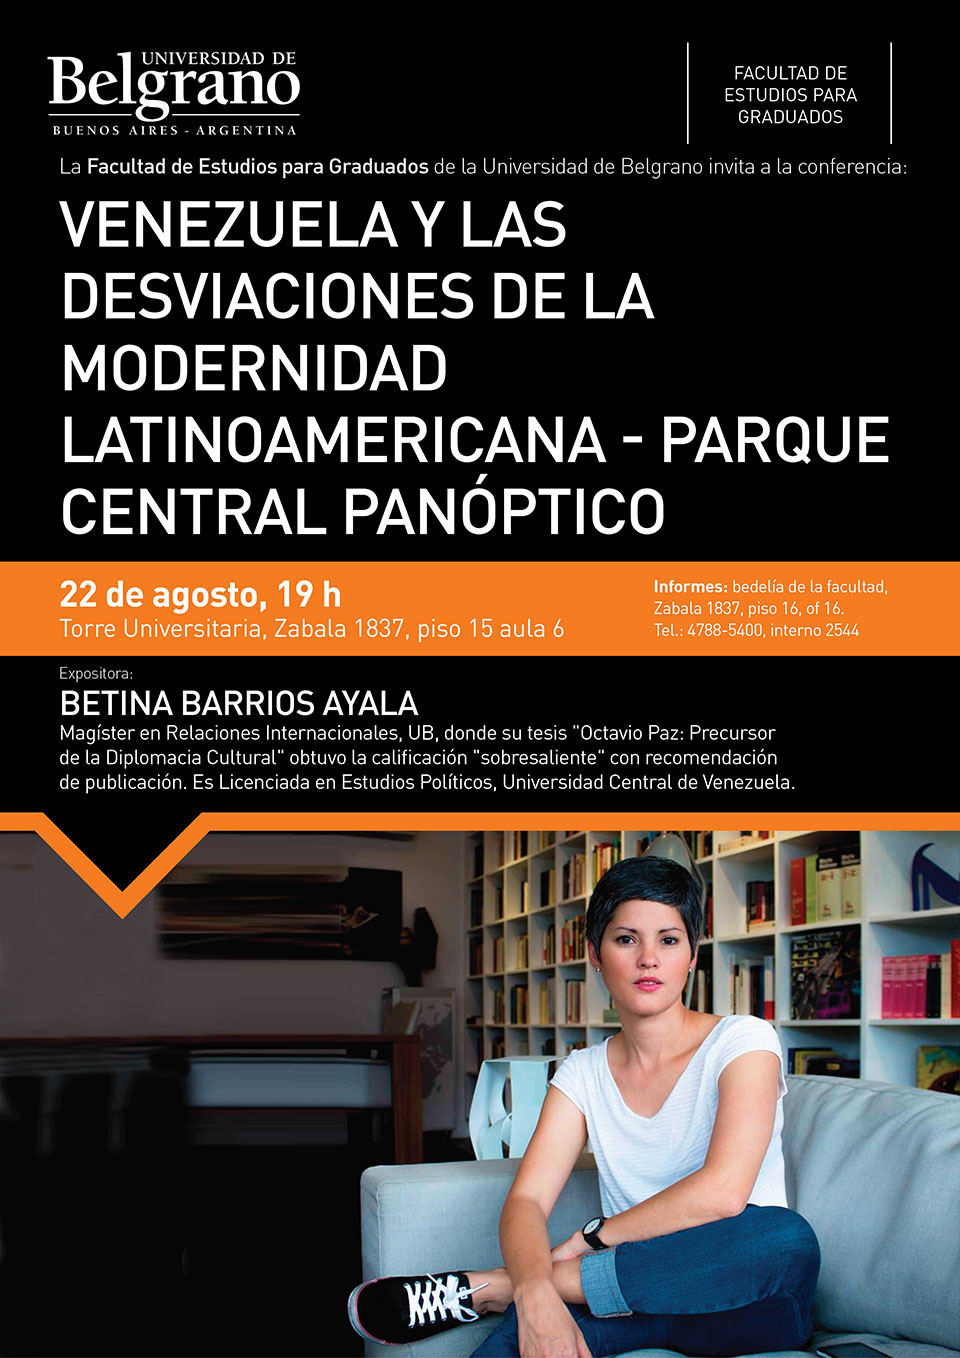 UB Graduados | Venezuela y Las Desviaciones de la Modernidad Latinoamericana